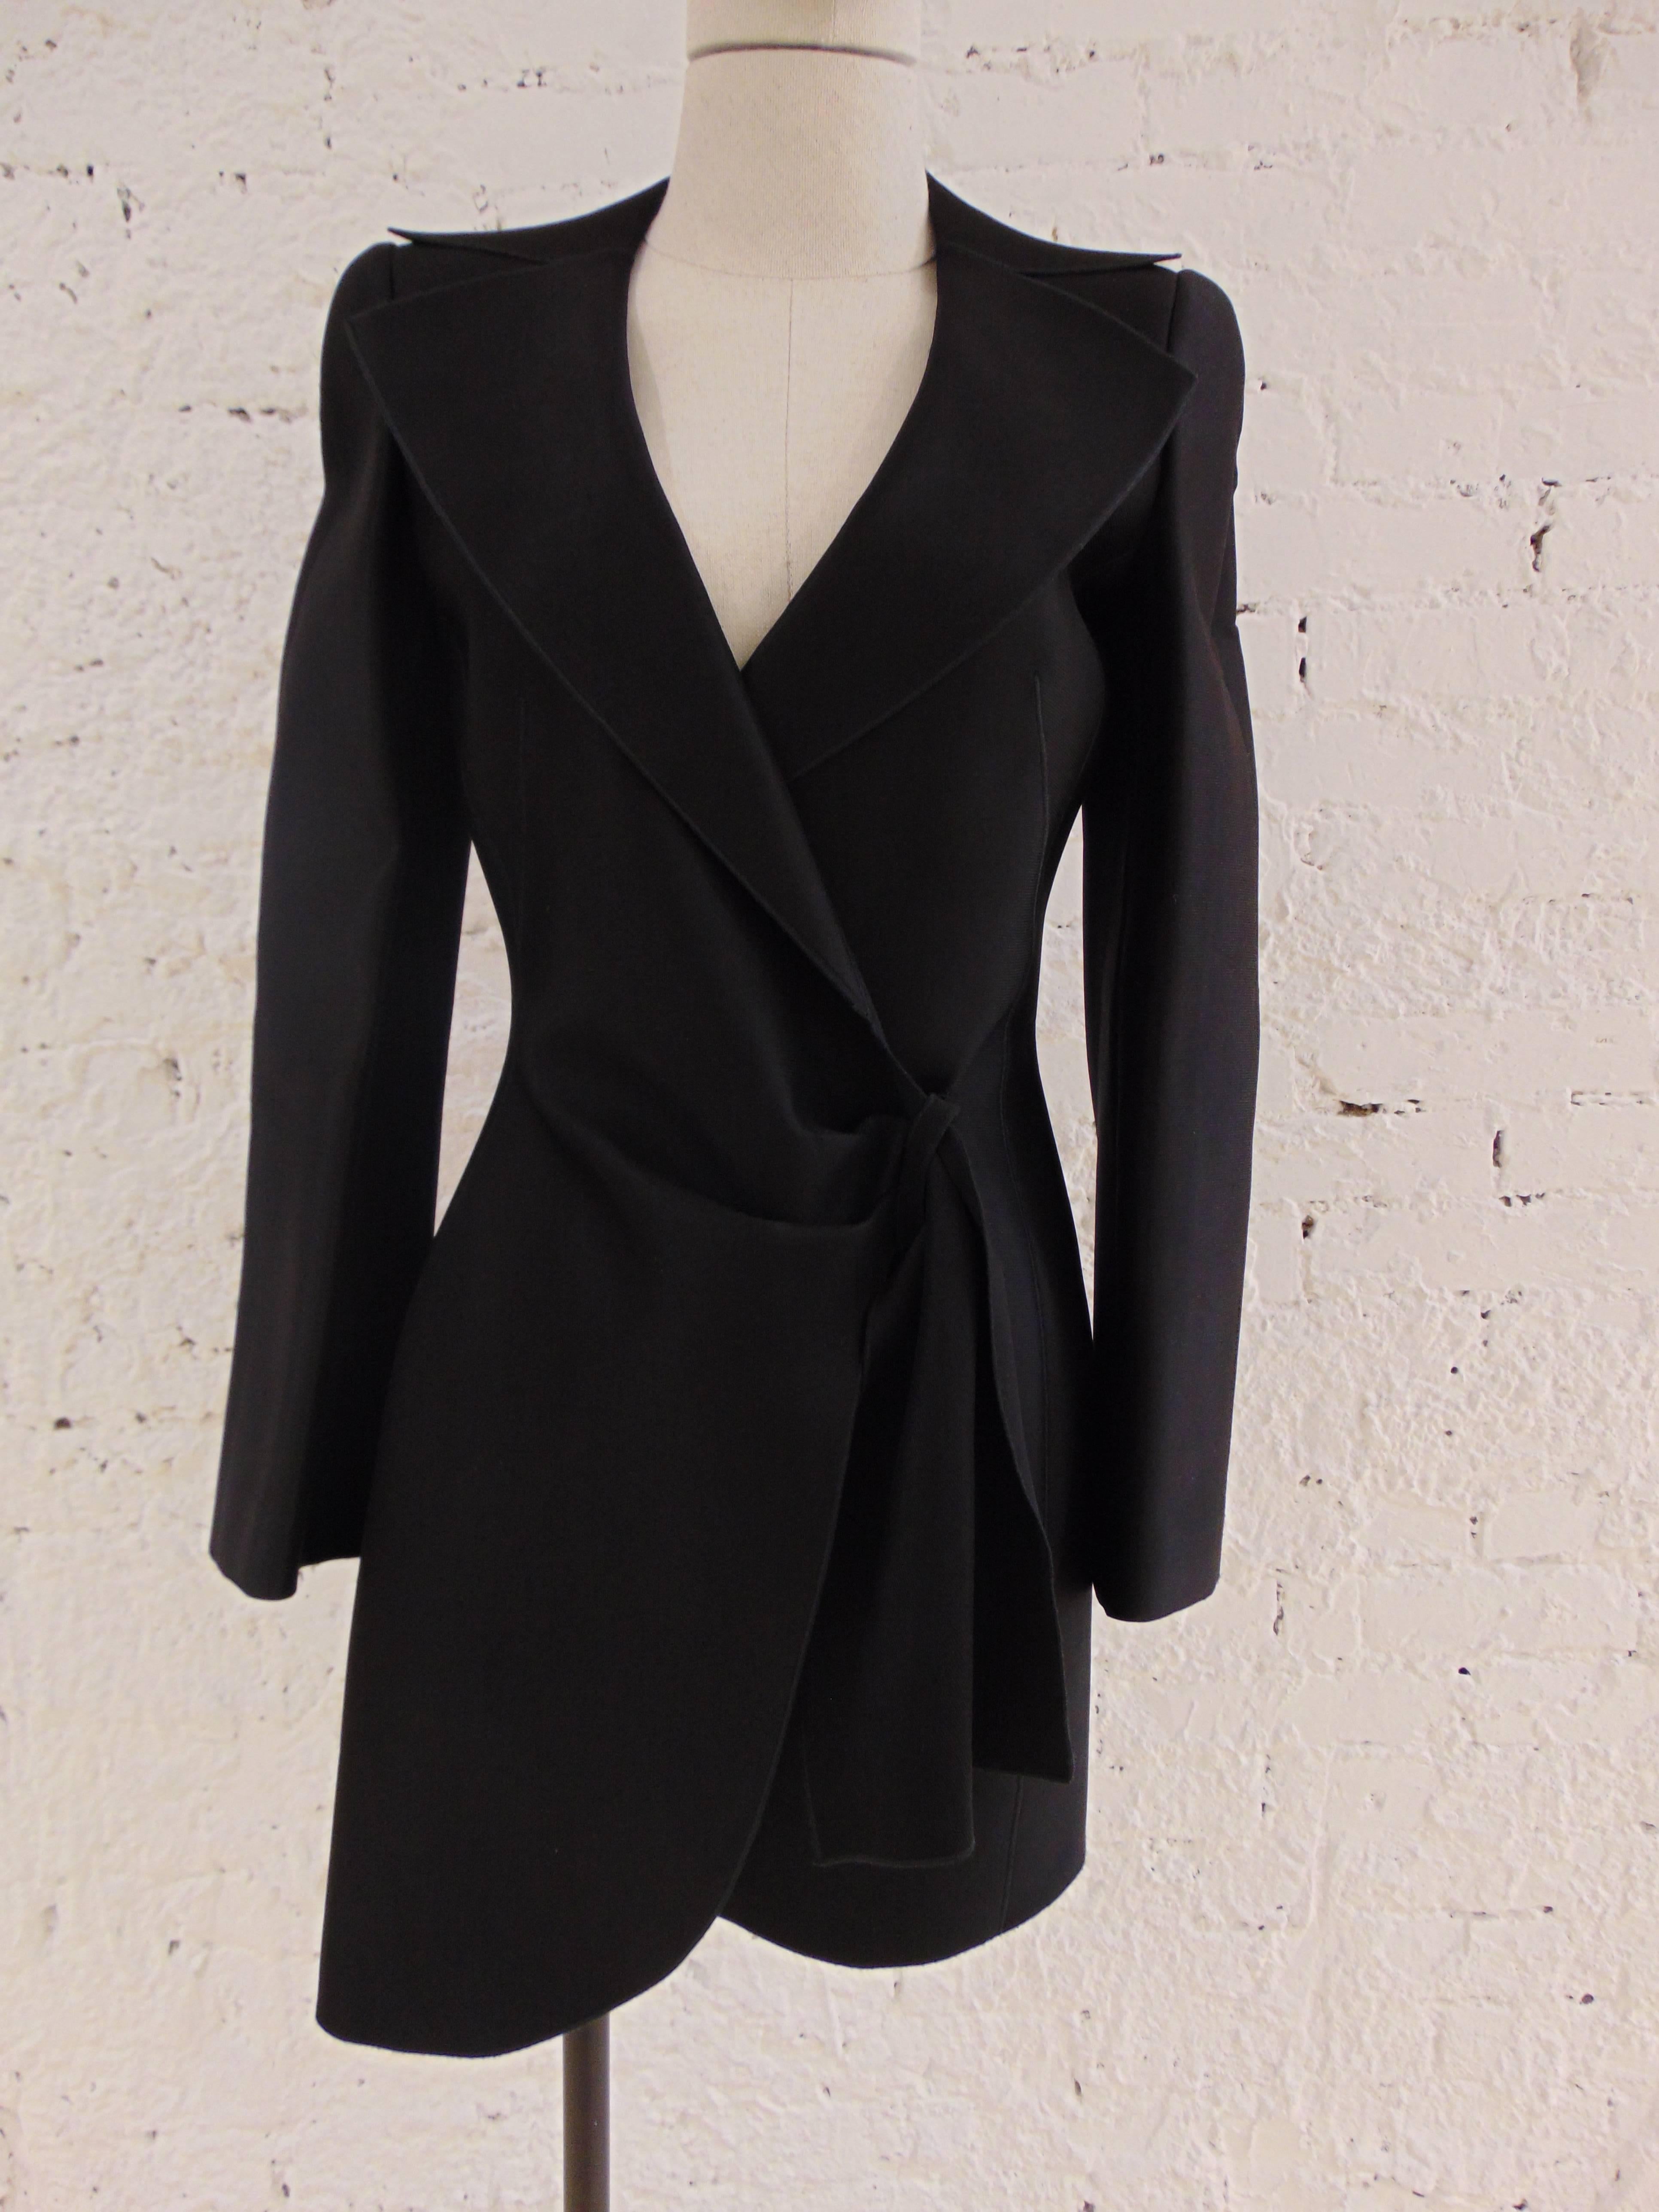 Black Giorgio Armani black latex coat